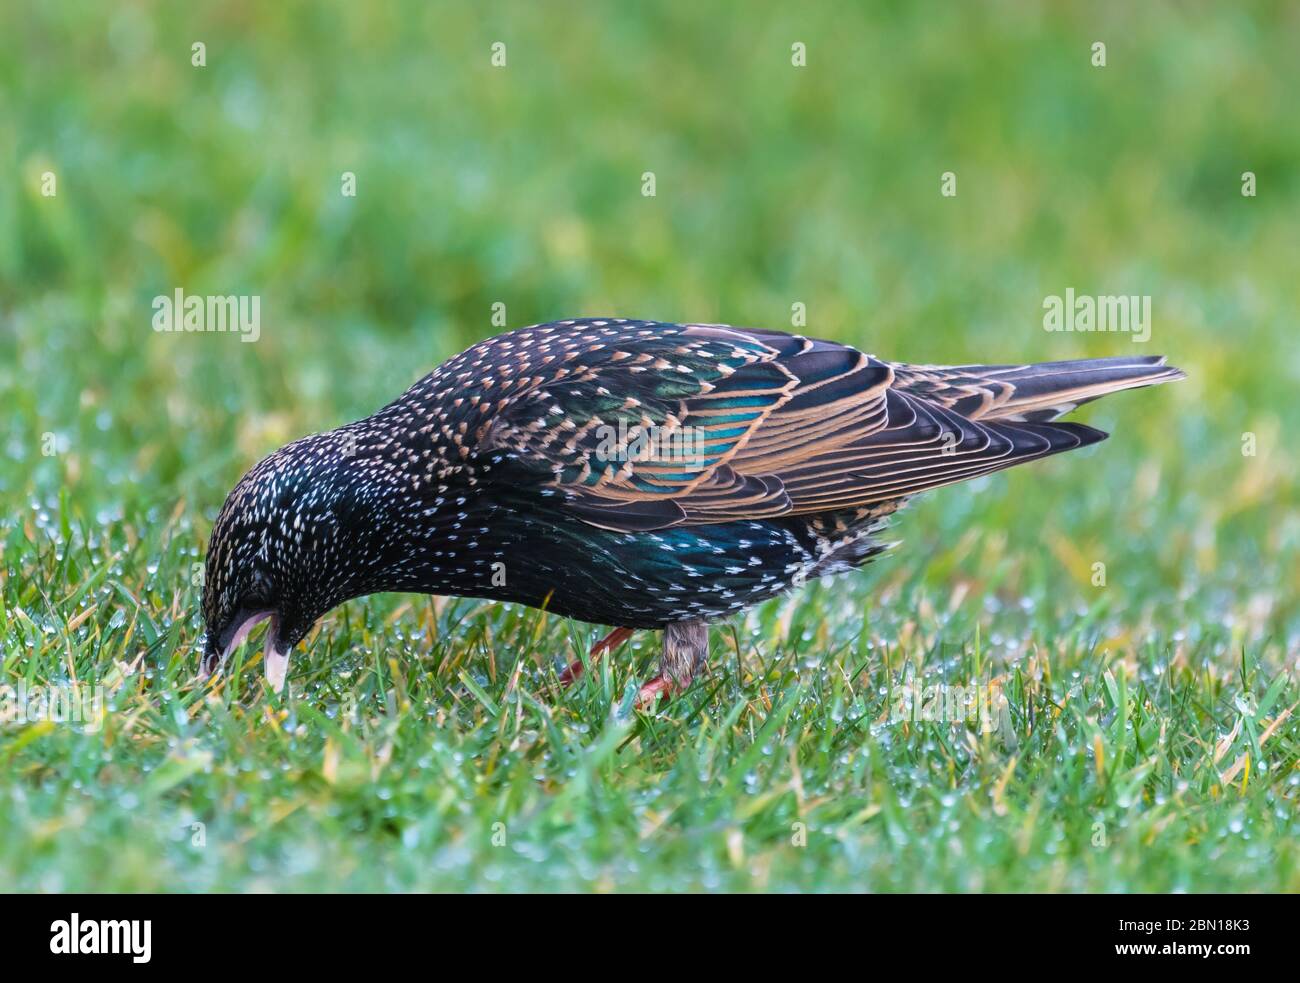 Gemeinsame Star (Sturnus vulgaris) Vogel im Winter Kommissionierung Würmer aus dem Boden in West Sussex, England, UK zu essen. Starling Fütterung. Stockfoto